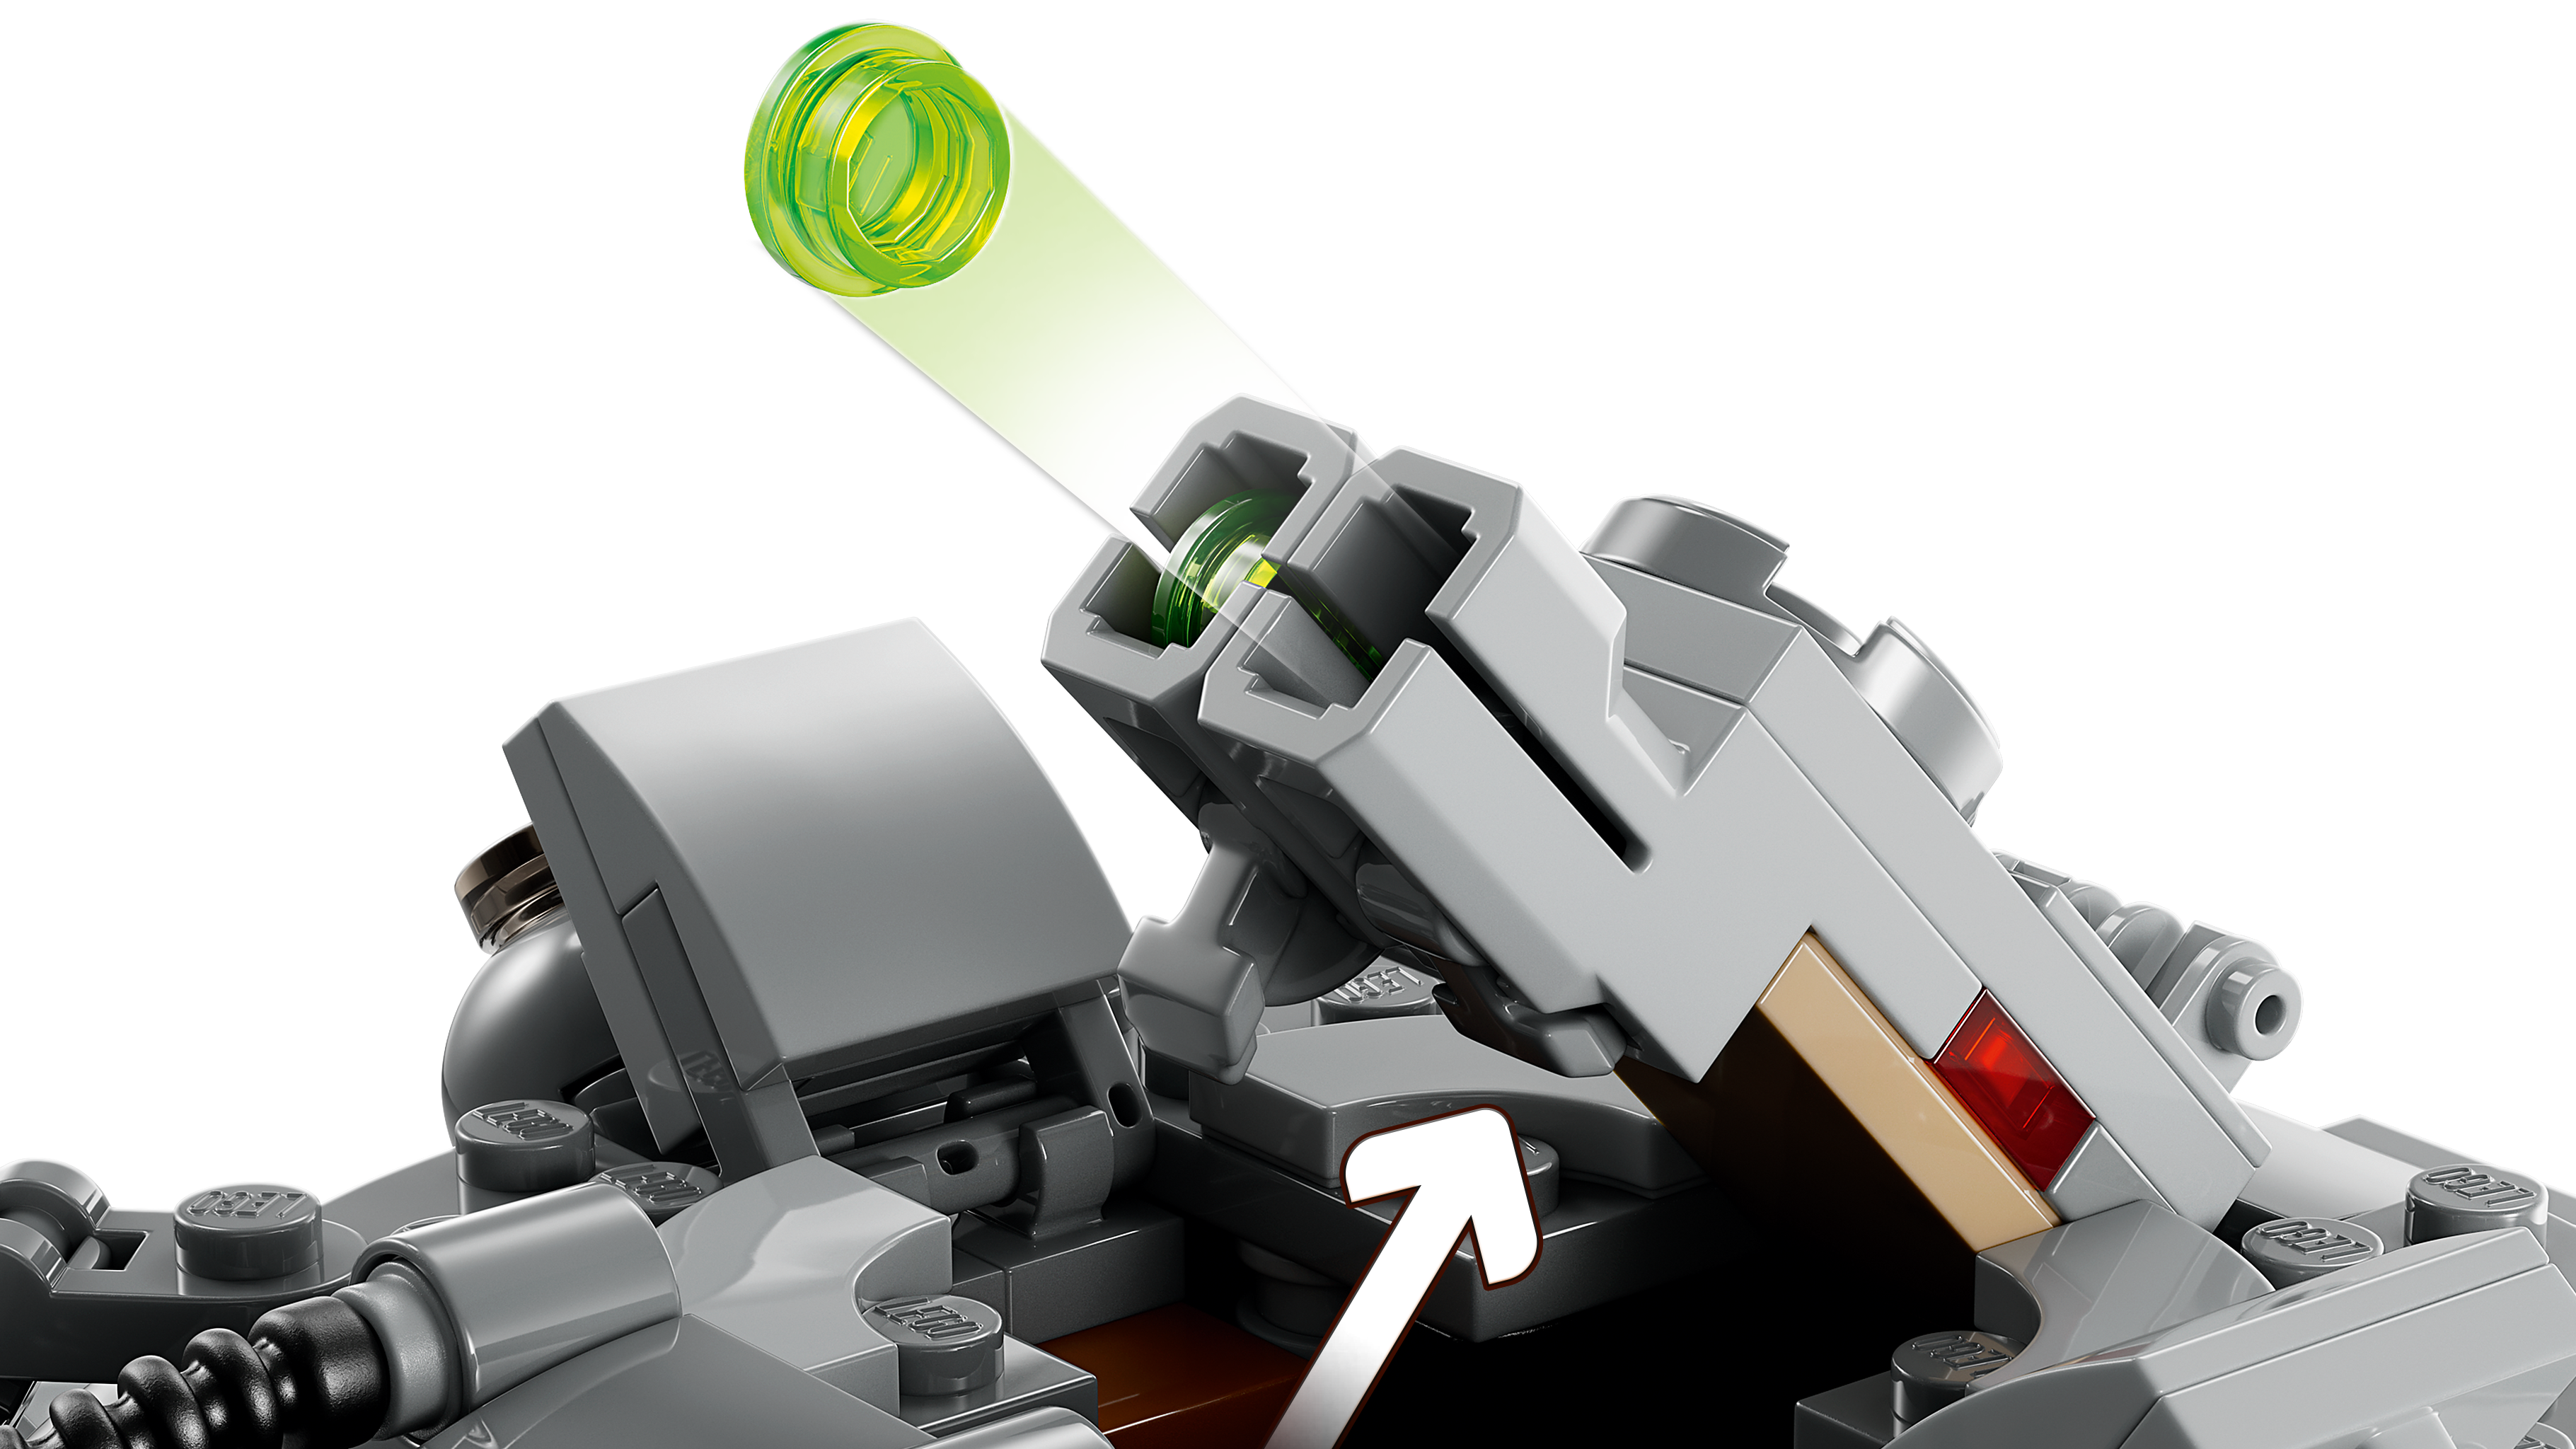 スパイダー・タンク 75361 - レゴ®スター・ウォーズ セット - LEGO.com